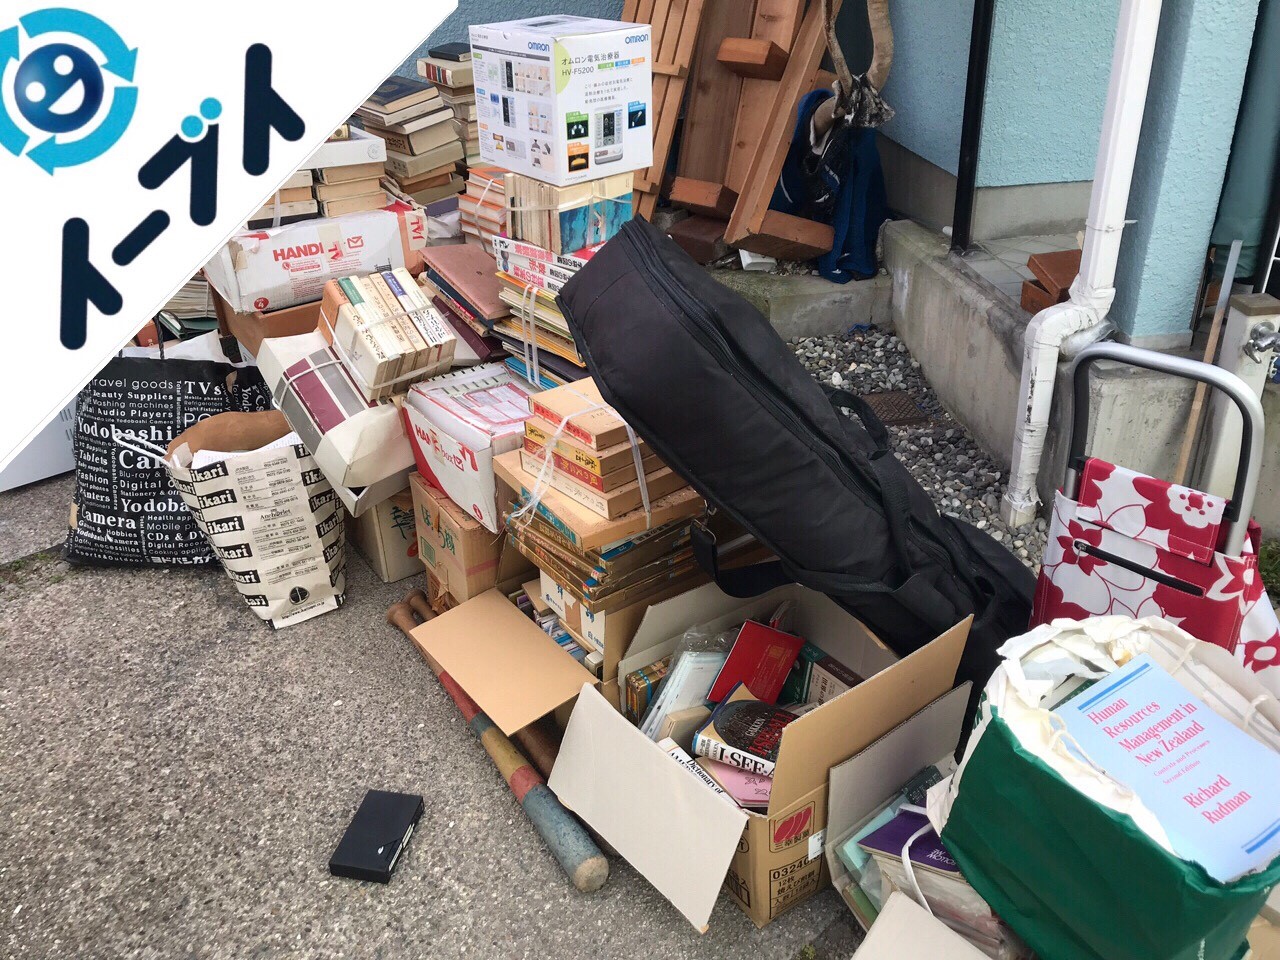 2018年9月21日大阪府和泉市でキャンプ用品や廃品など物置の中の不用品回収。写真2